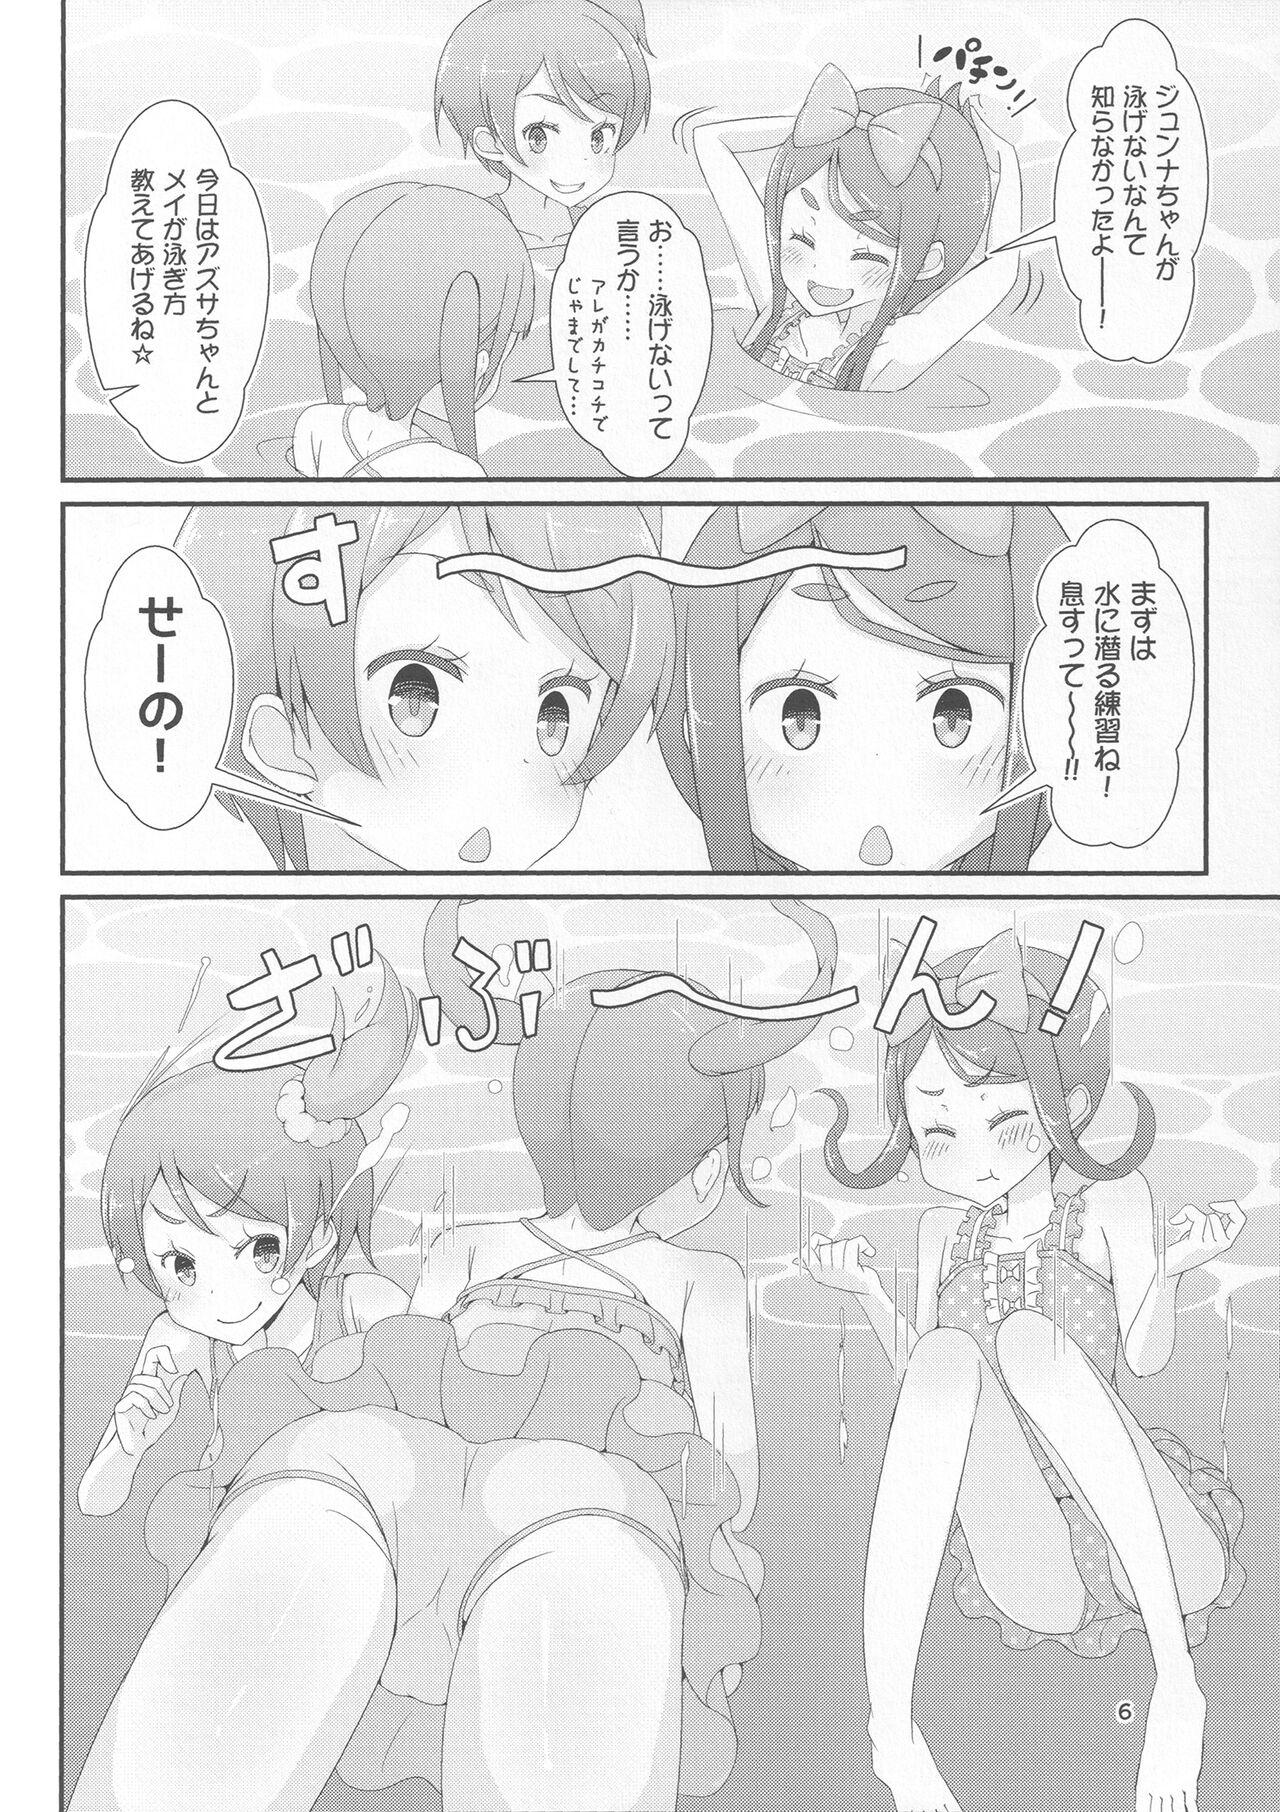 Sensei! Puuru shisetsu de joji Sou shite mite! | Sensei! Try wearing girl's clothes at a pool! 8